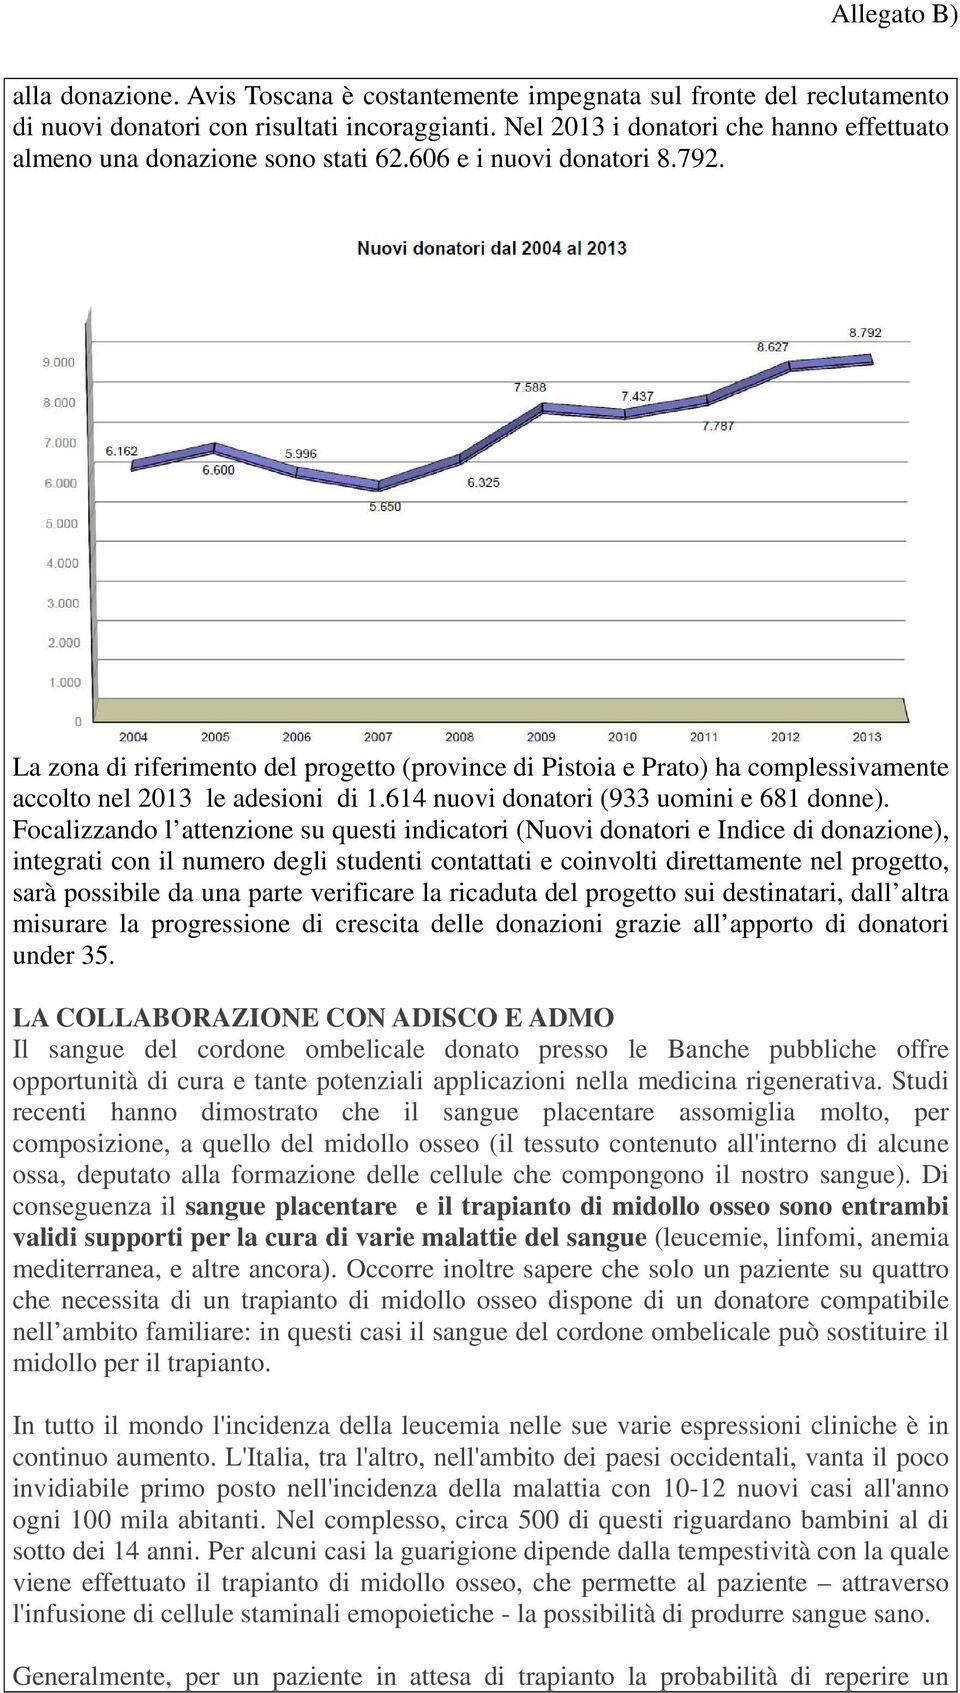 La zona di riferimento del progetto (province di Pistoia e Prato) ha complessivamente accolto nel 2013 le adesioni di 1.614 nuovi donatori (933 uomini e 681 donne).